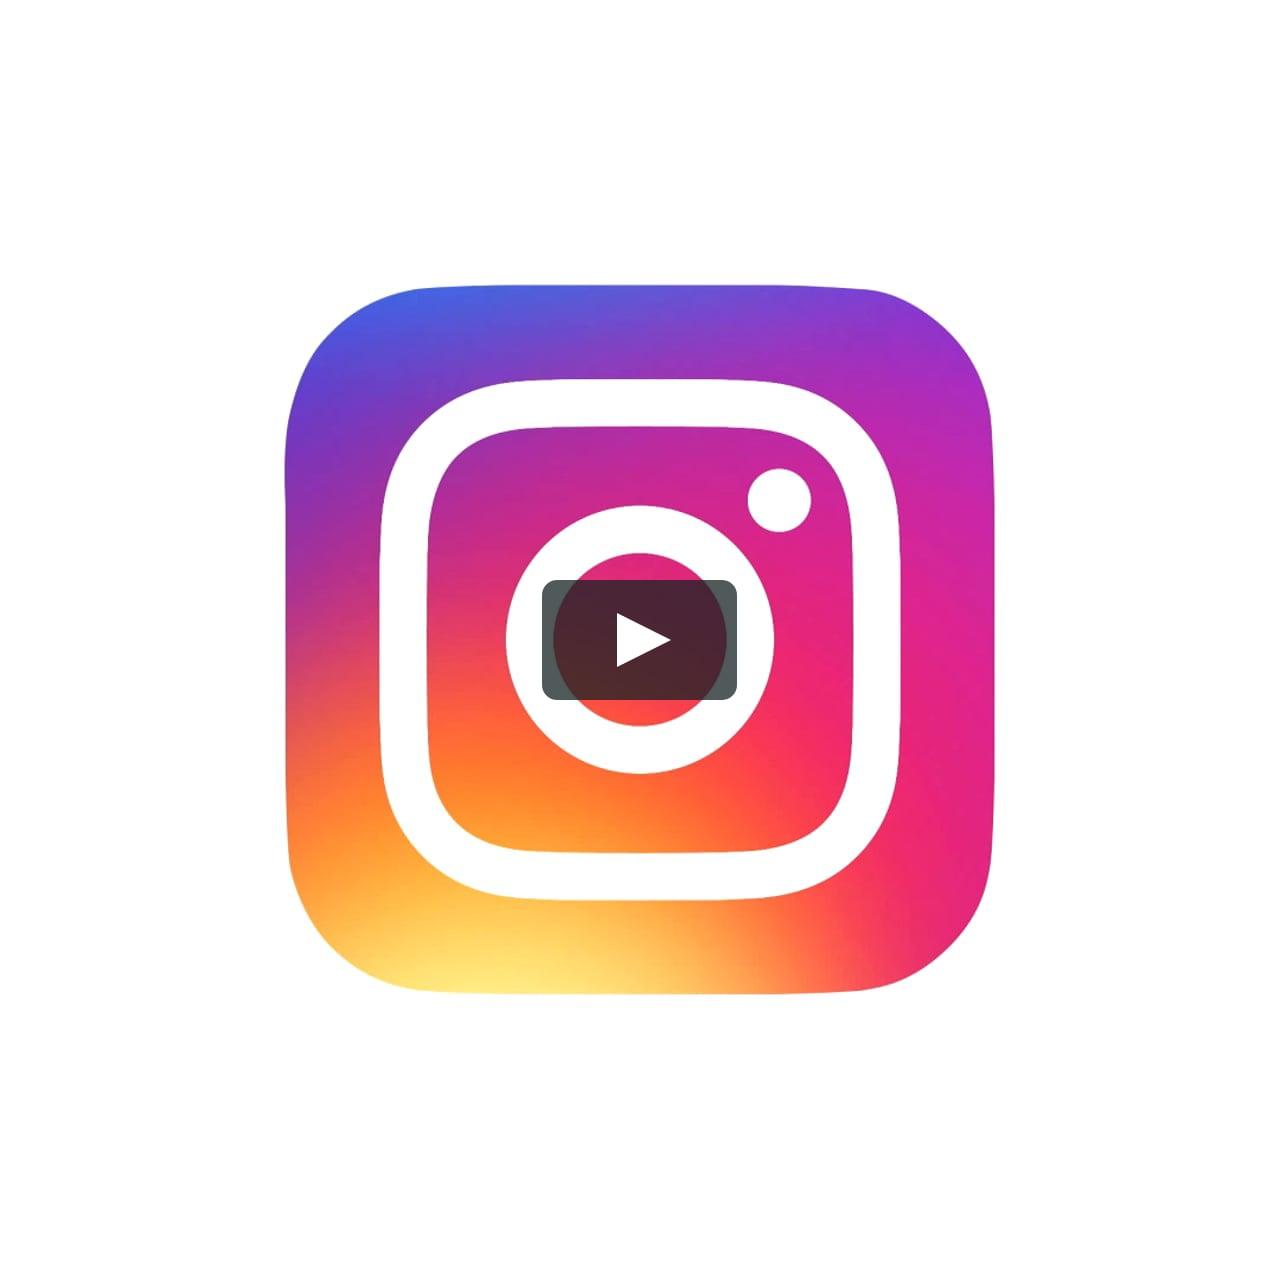 Instrgram Logo - The Evolution of the Instagram Logo